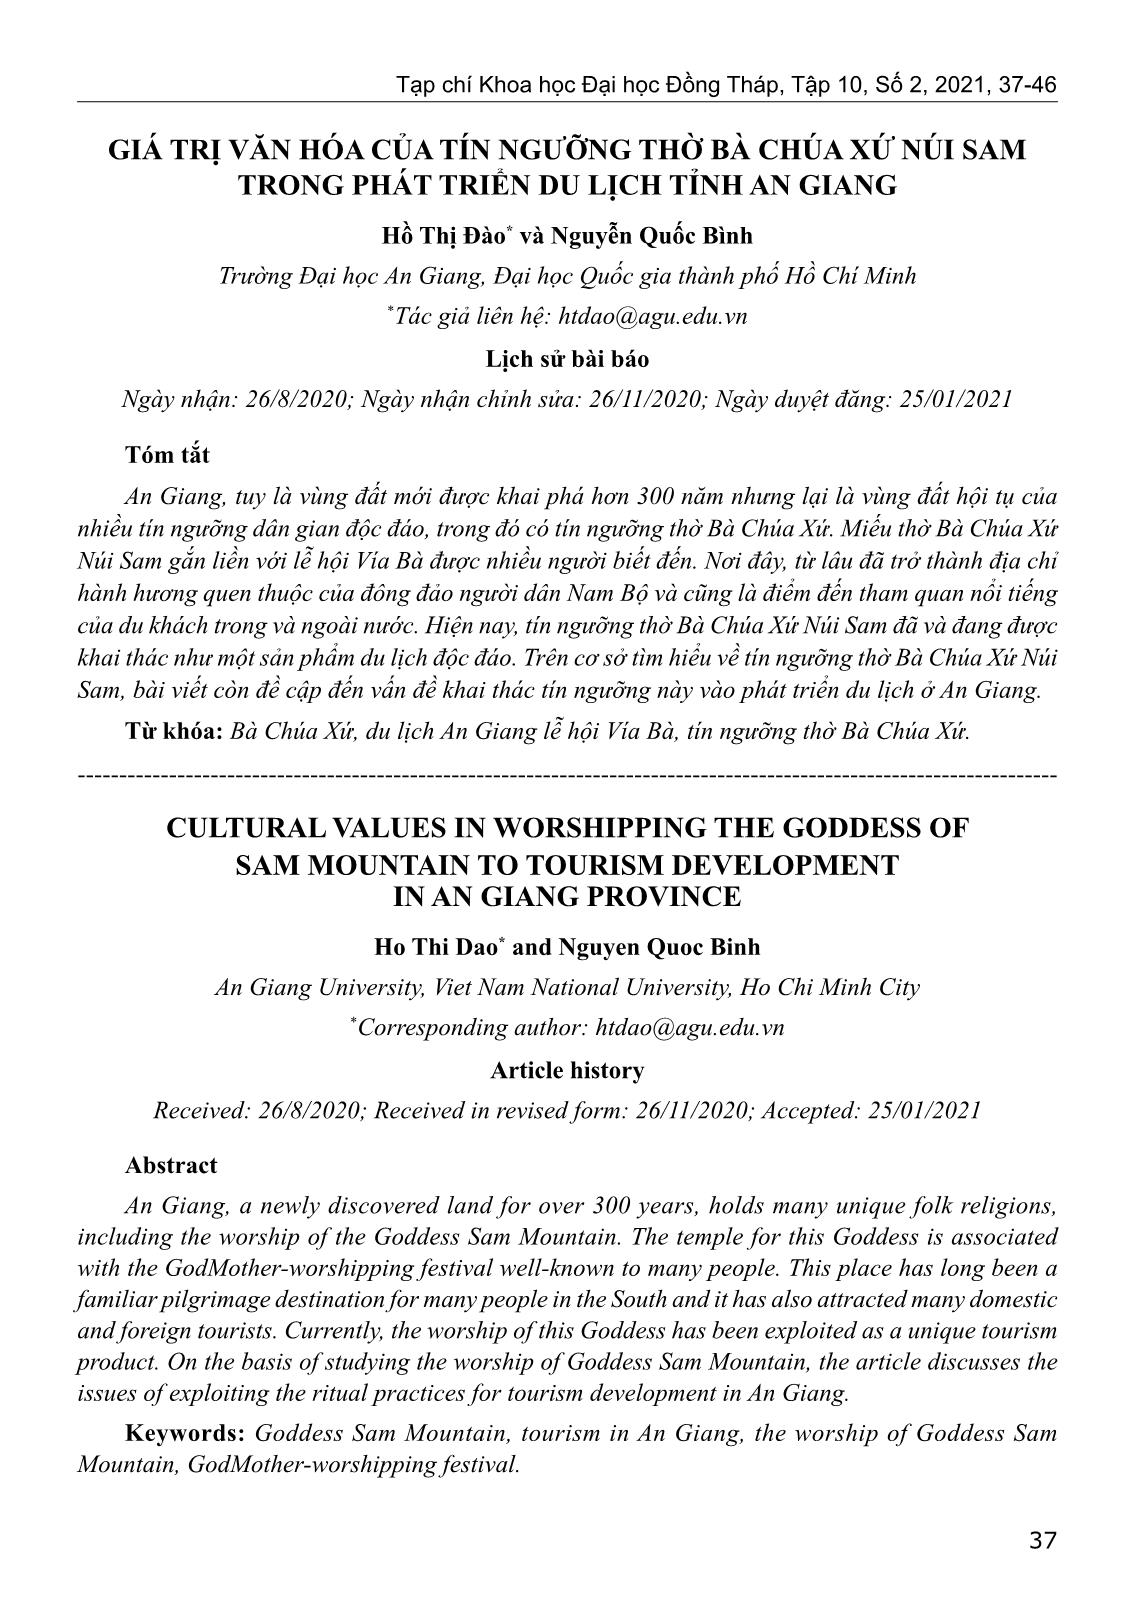 Giá trị văn hóa của tín ngưỡng thờ Bà Chúa Xứ núi Sam trong phát triển du lịch tỉnh An Giang trang 1